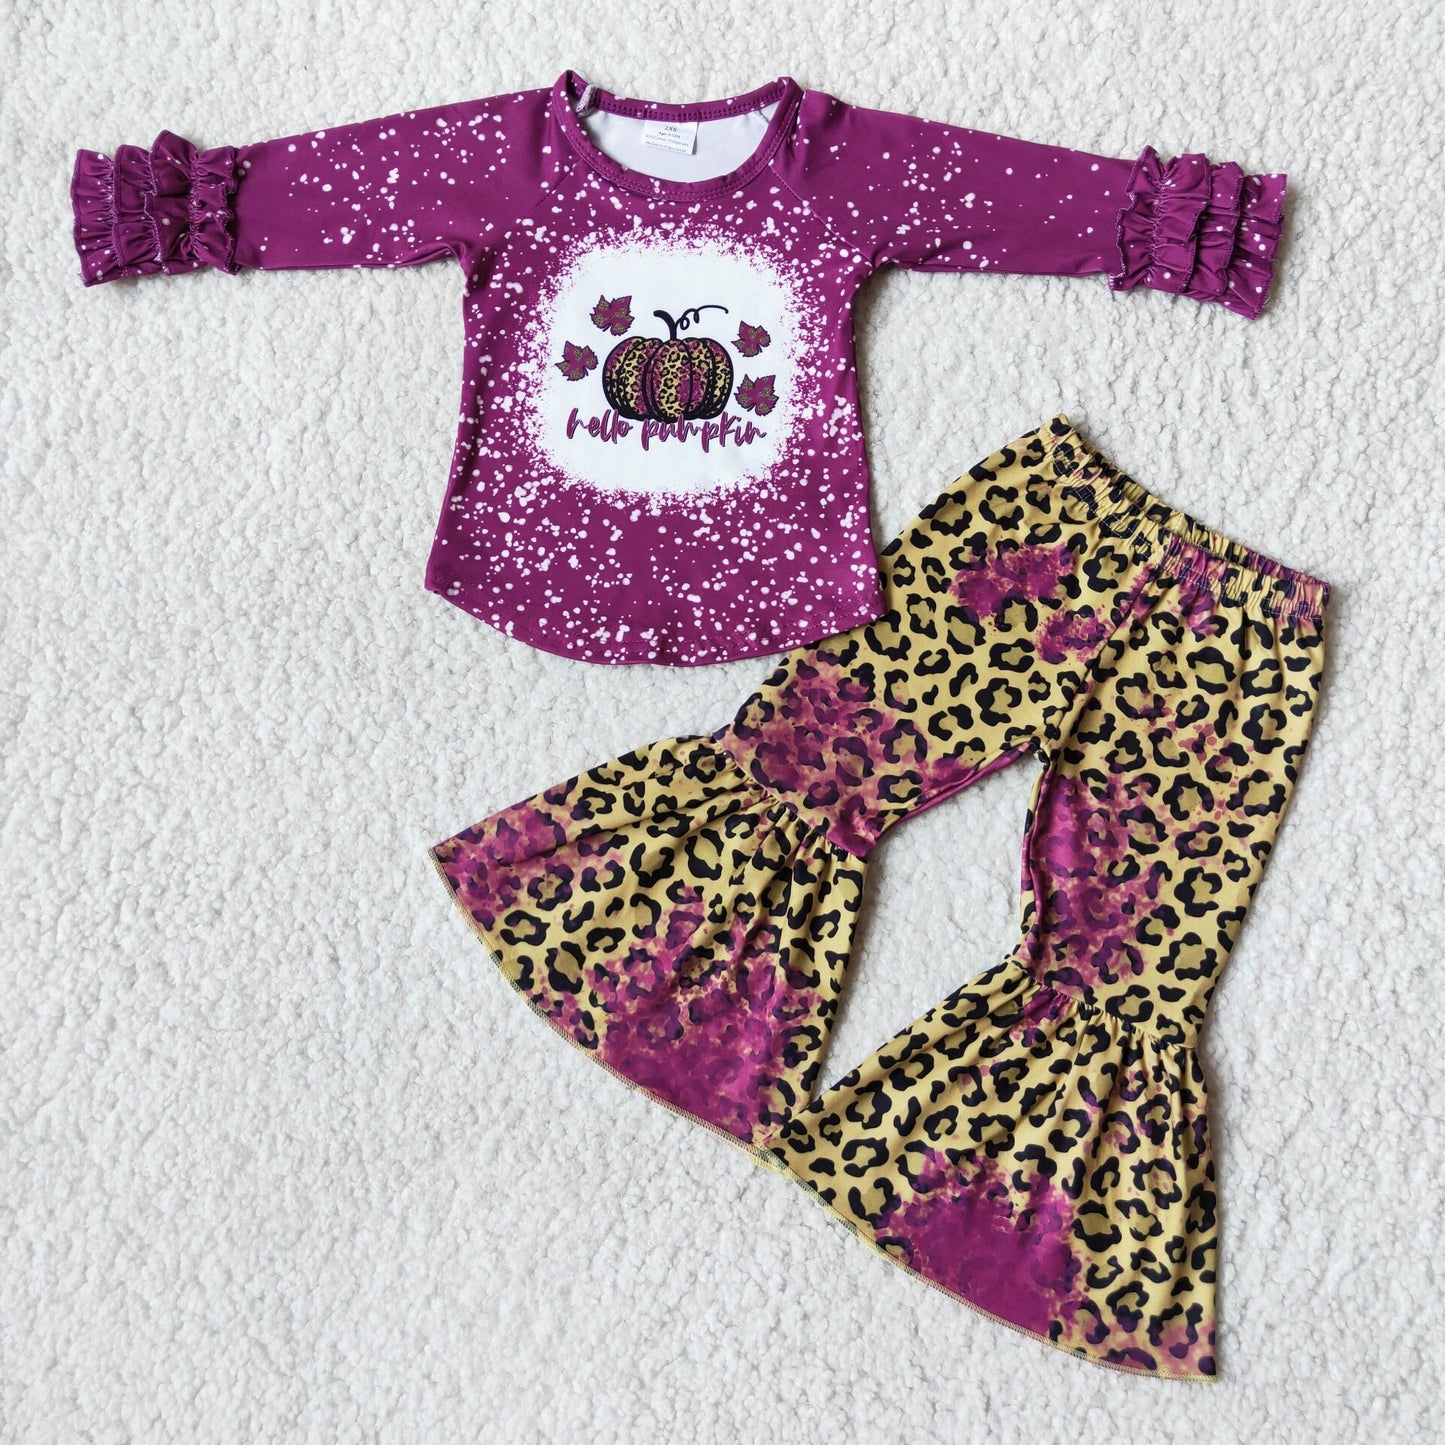 6 B8-2 Pumpkin polka dot purple long-sleeved top leopard print bell bottoms suit